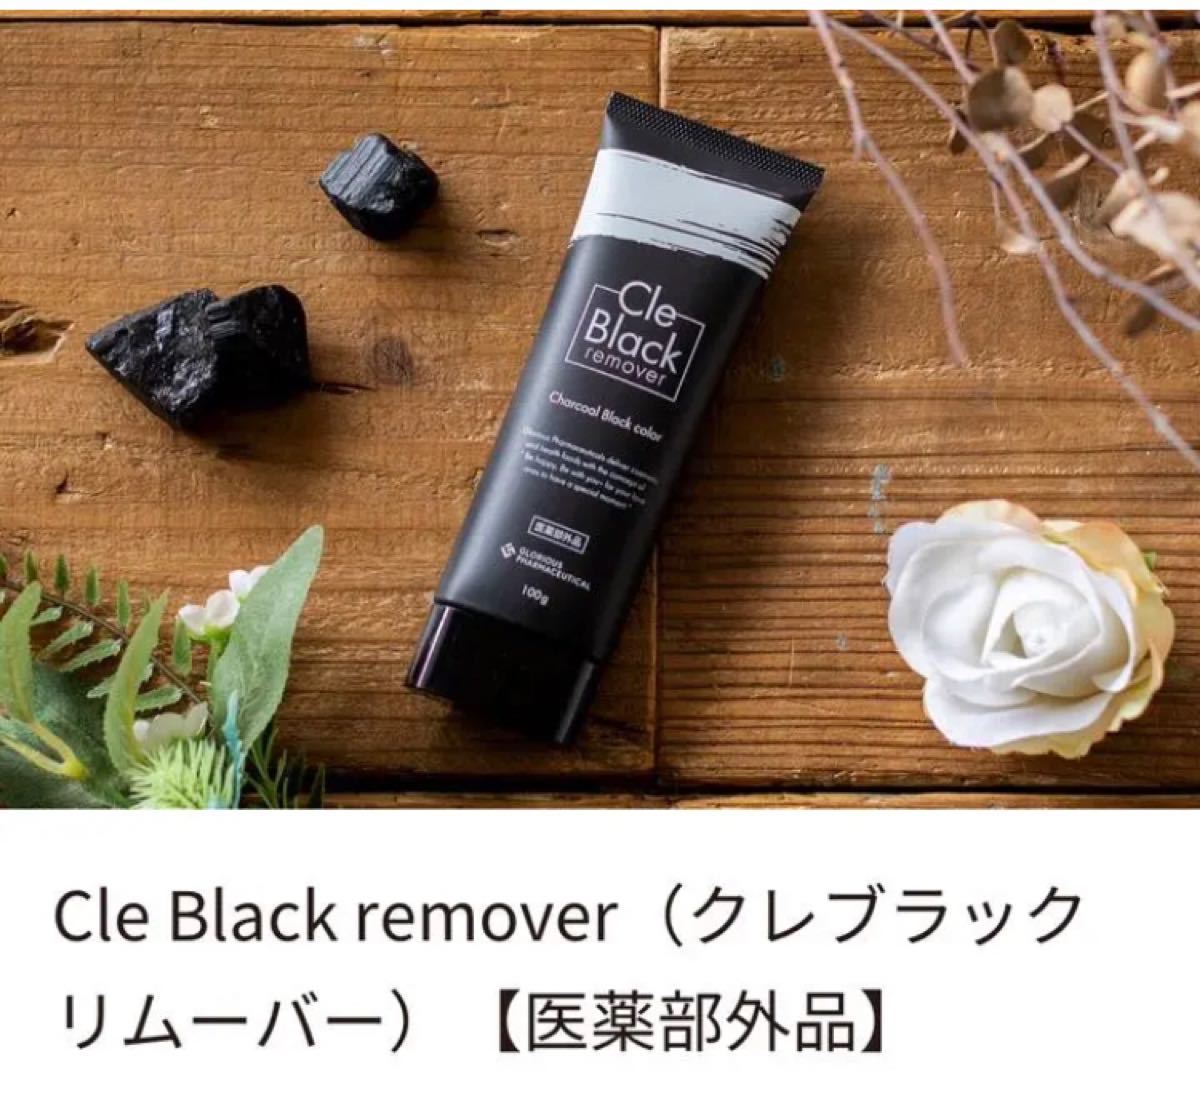 Cle Black remover クレブラックリムーバー 100g 除毛 脱毛